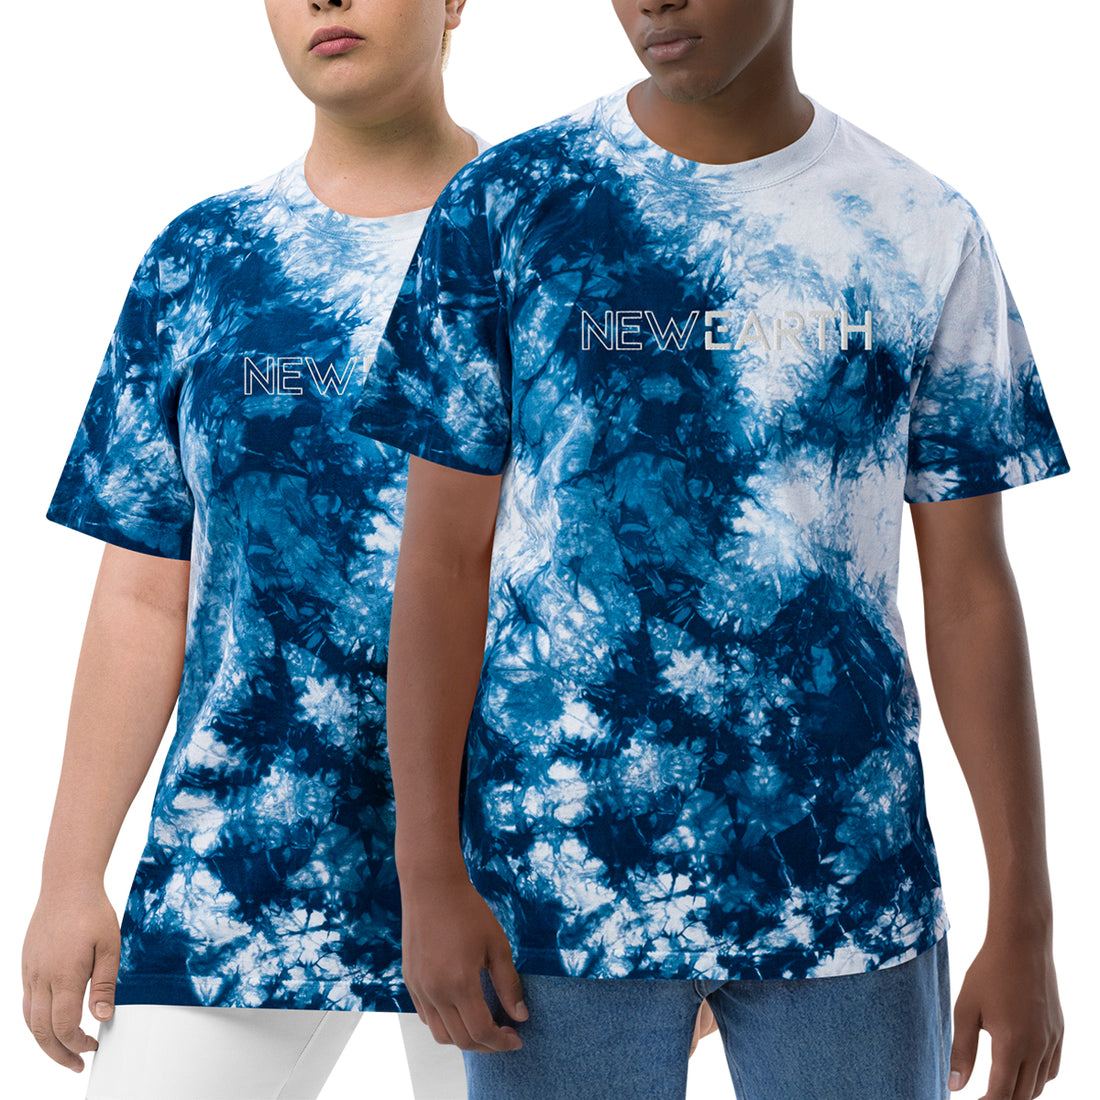 New Earth - Unisex - Oversized Tie-Dye T-shirt